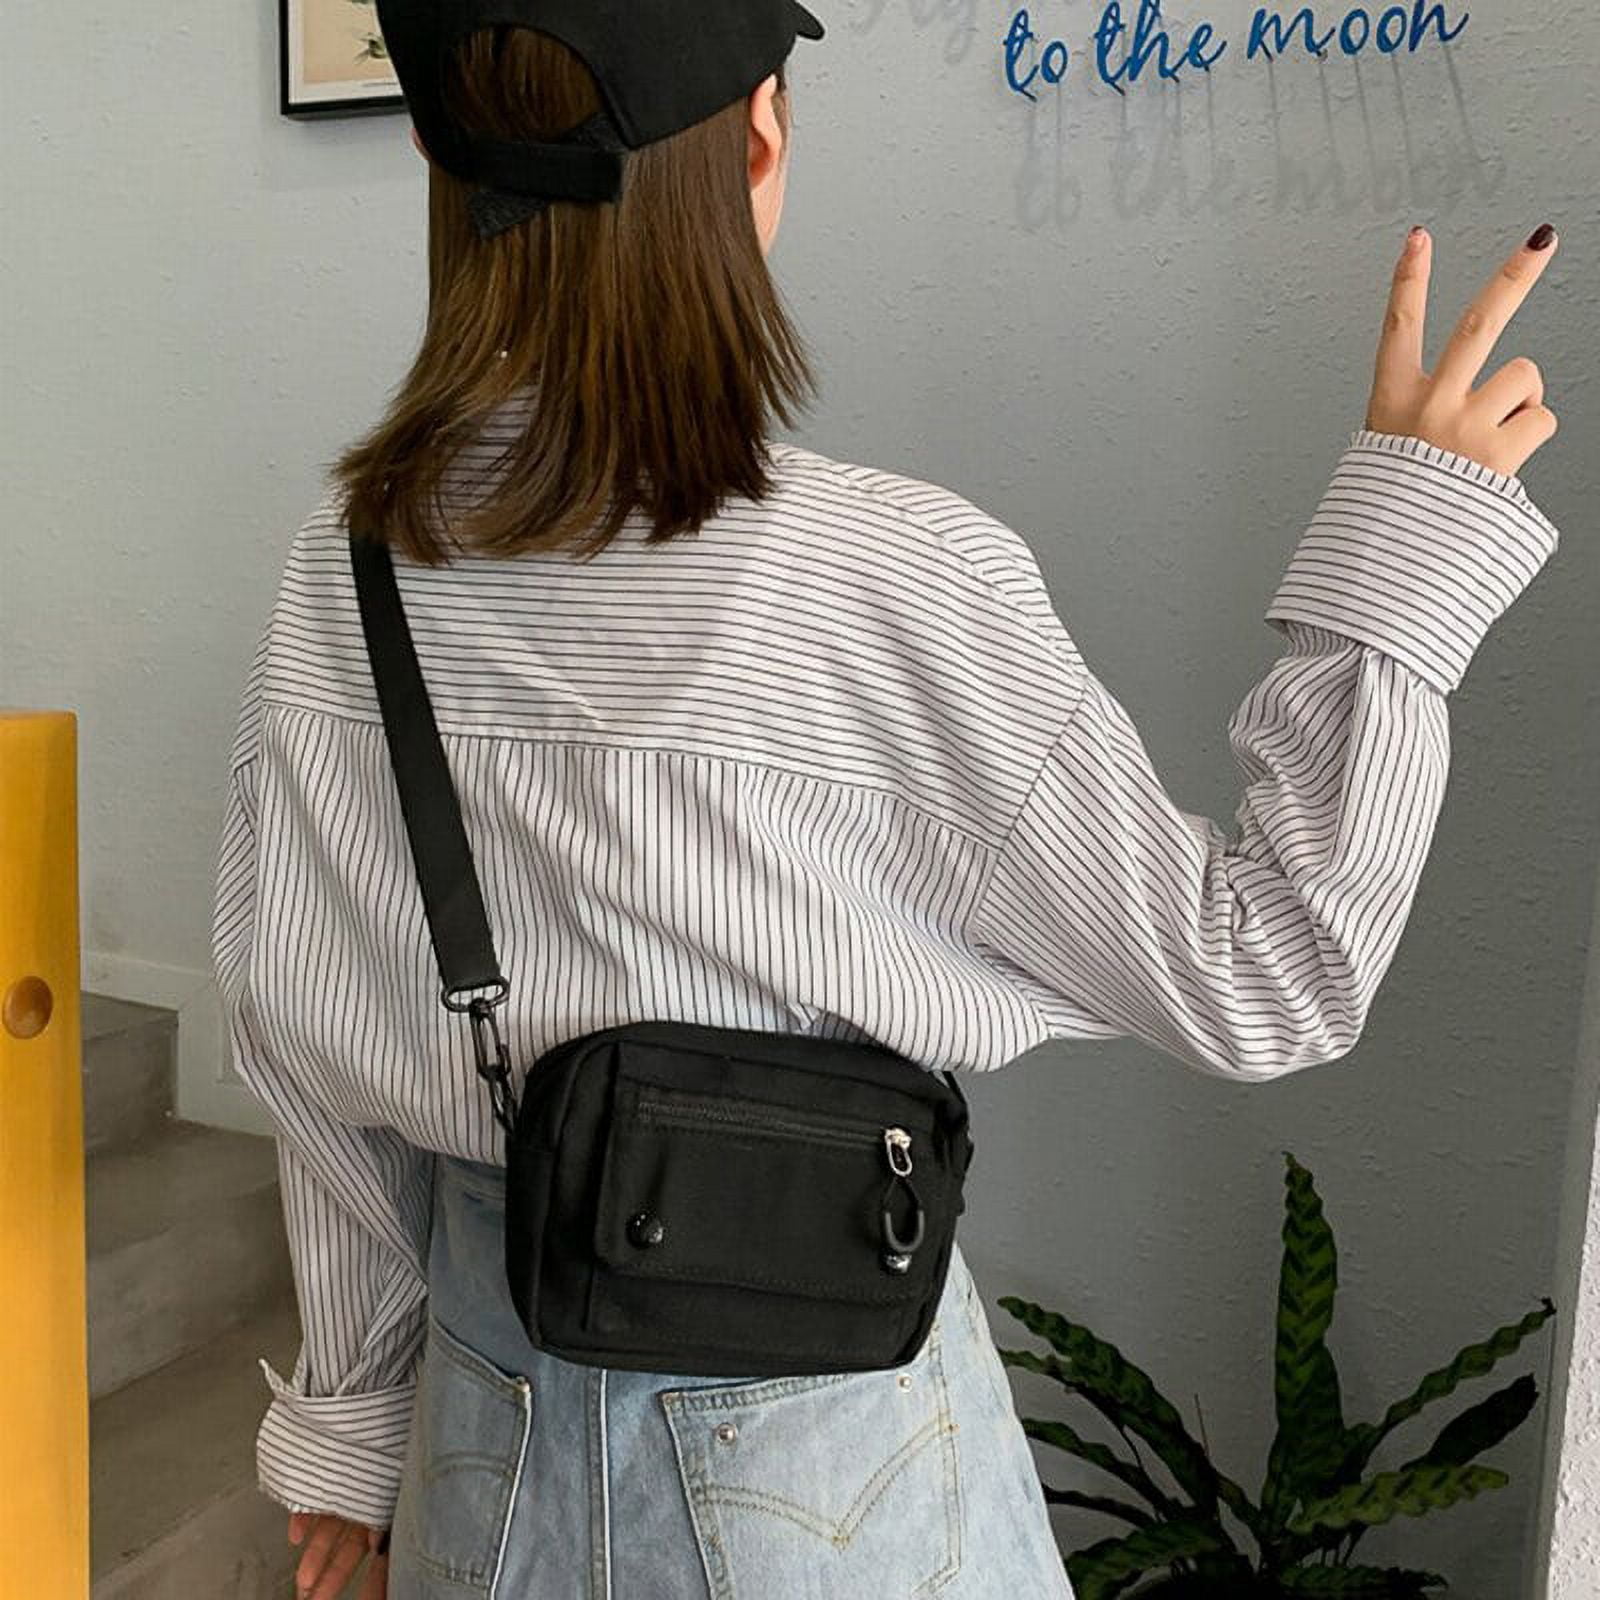 Yucurem Korean Print Minority Mobile Phone Bag, Pearl Chain Flap Handbag  for Ladies Girls (Black) 